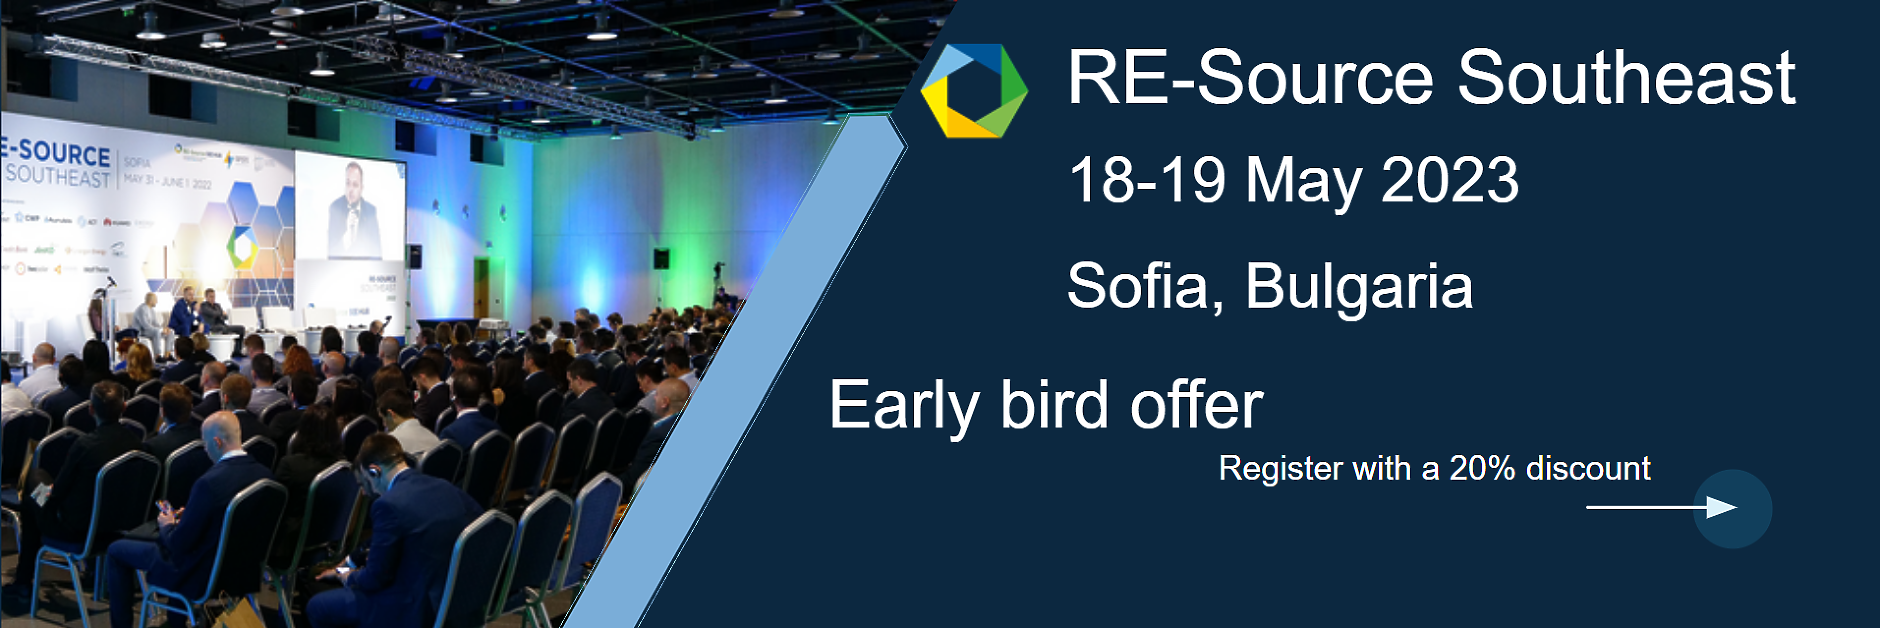 Трето издание на конференцията RE-Source Southeas  предстои в София през май